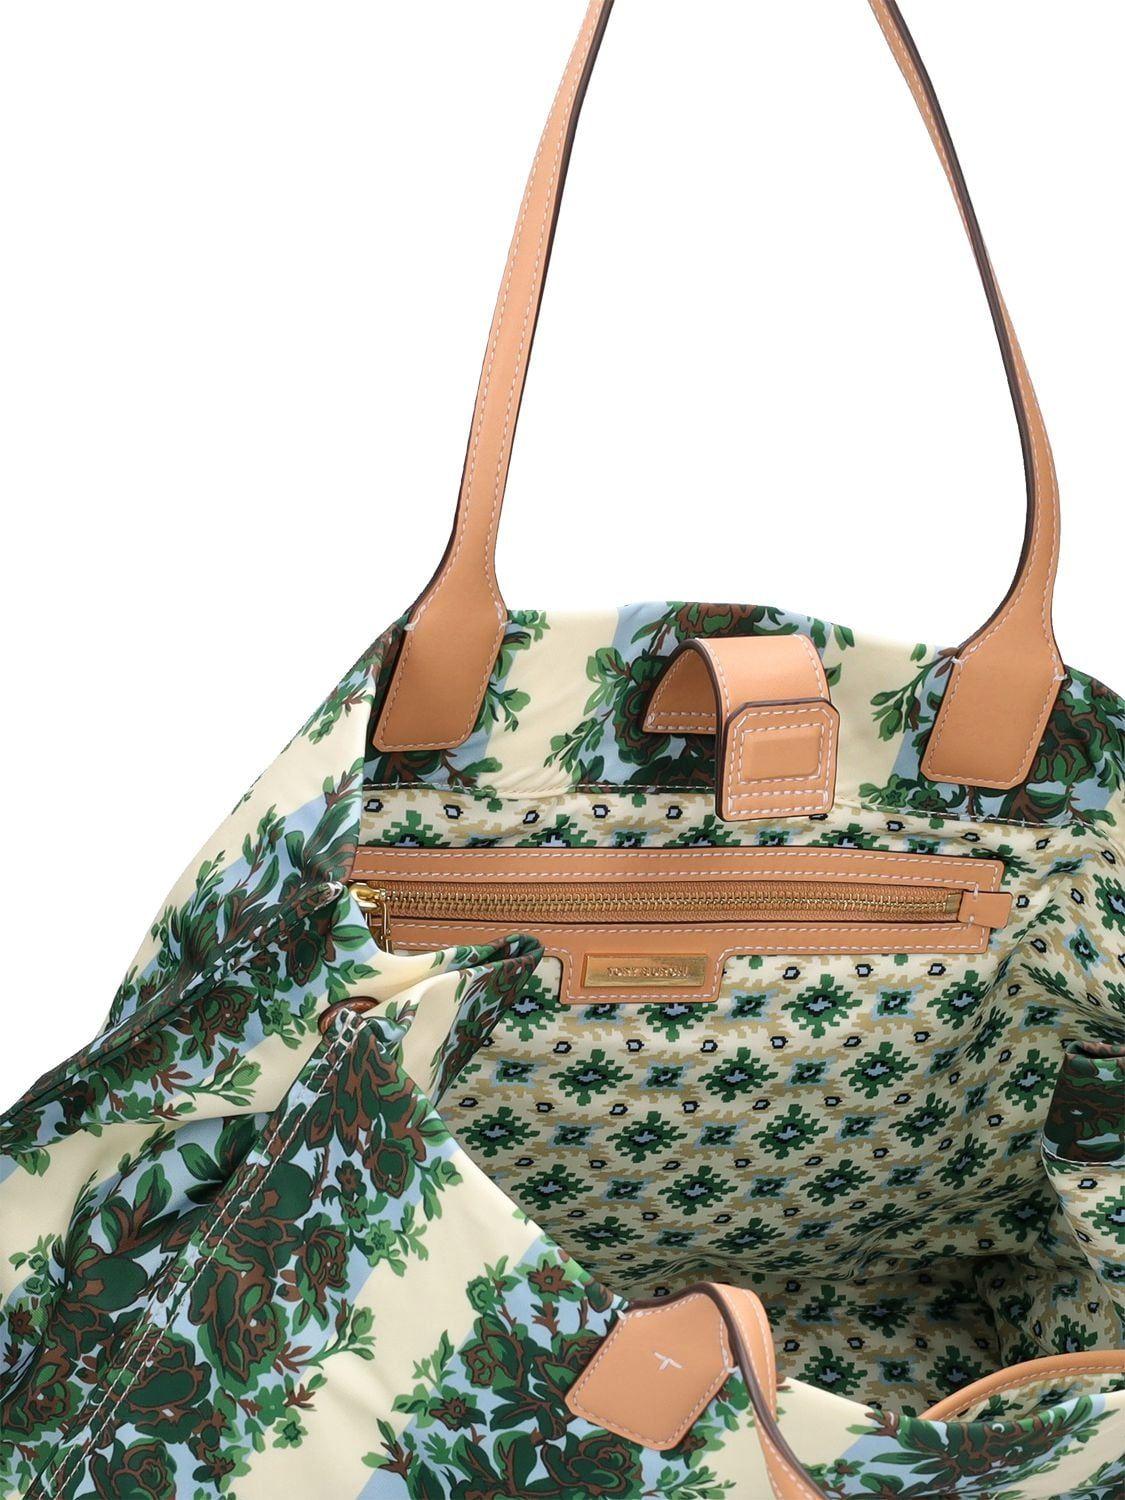 Ella Printed Tote: Women's Handbags, Tote Bags